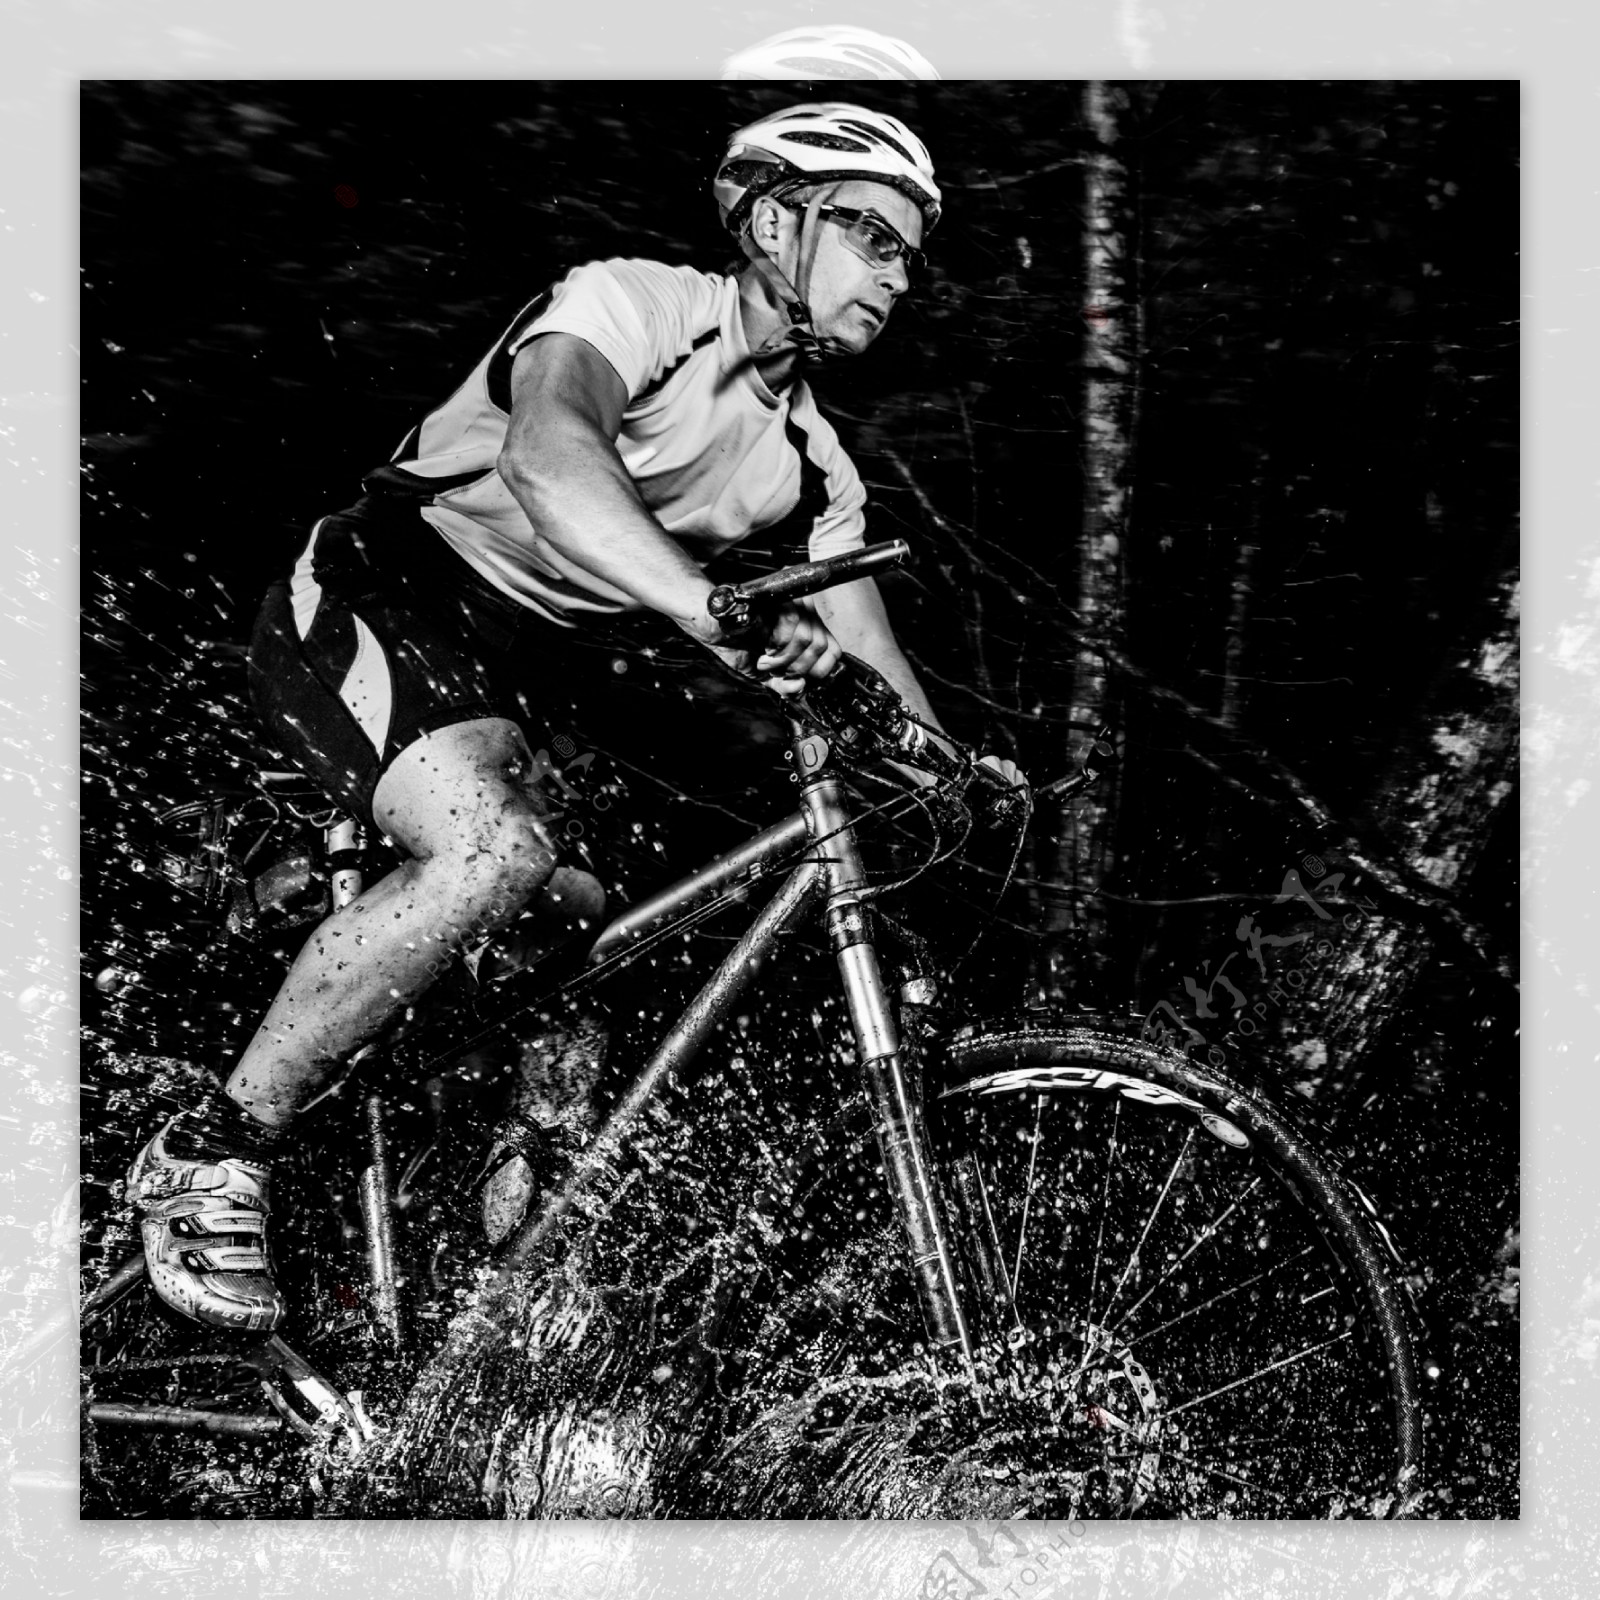 树林中骑自行车的男人图片